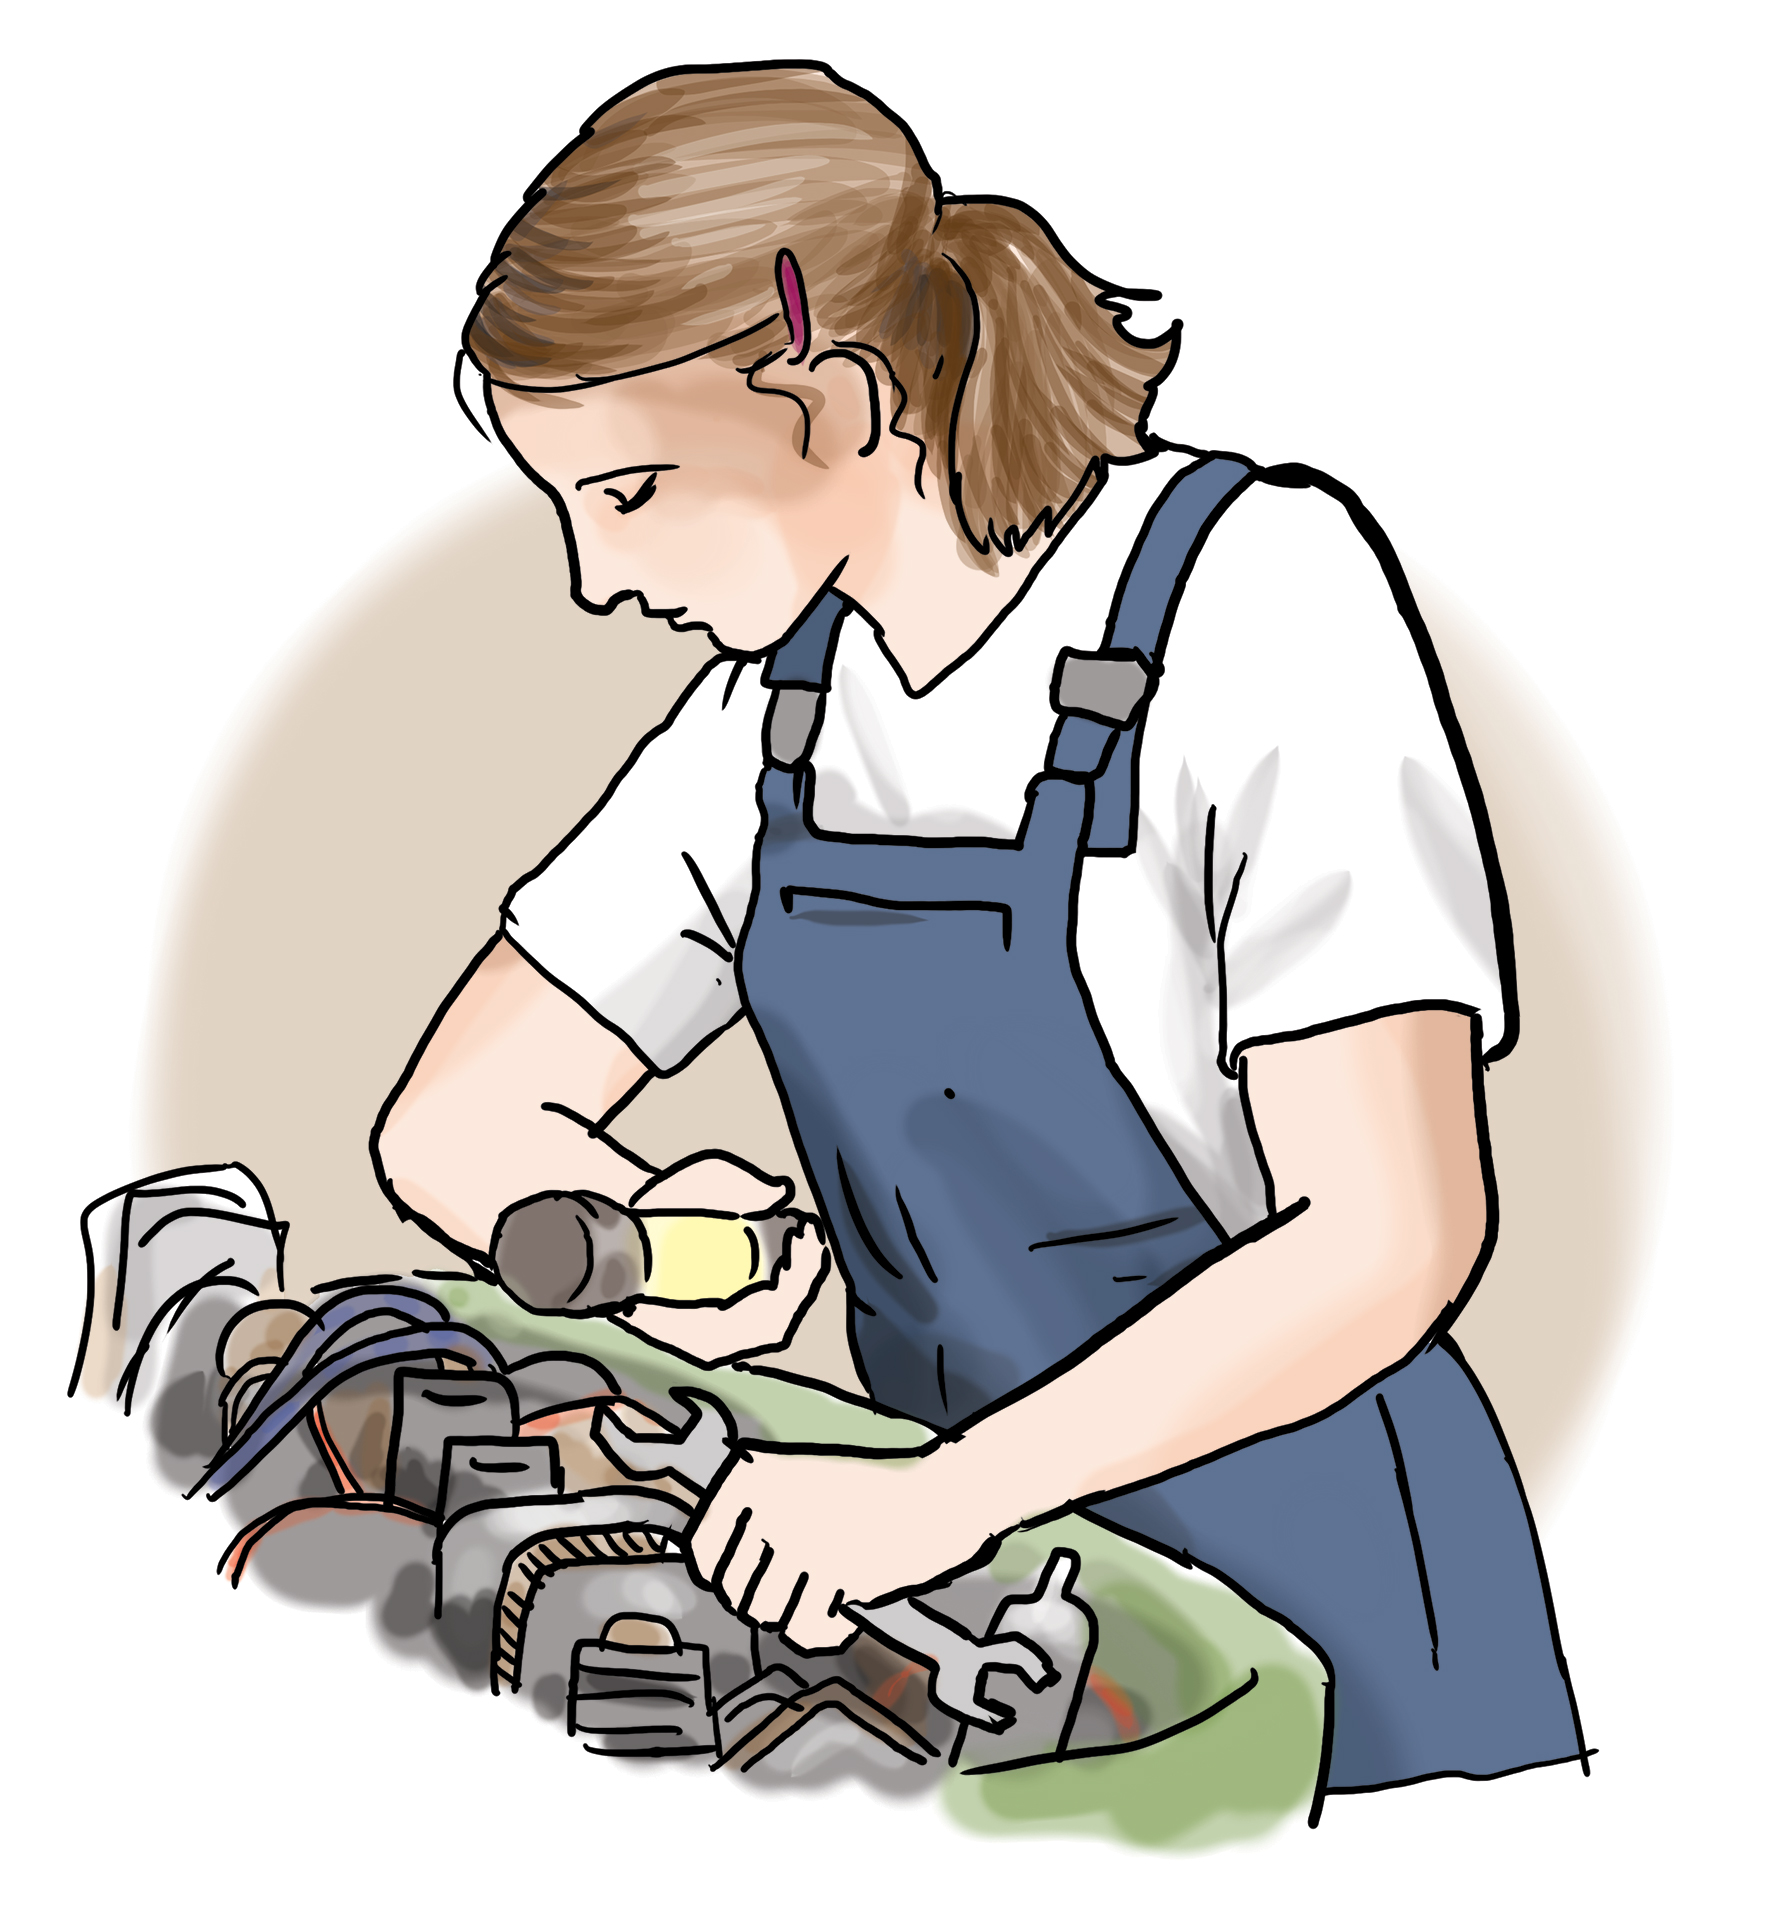 Eine Frau arbeitet als Mechanikerin